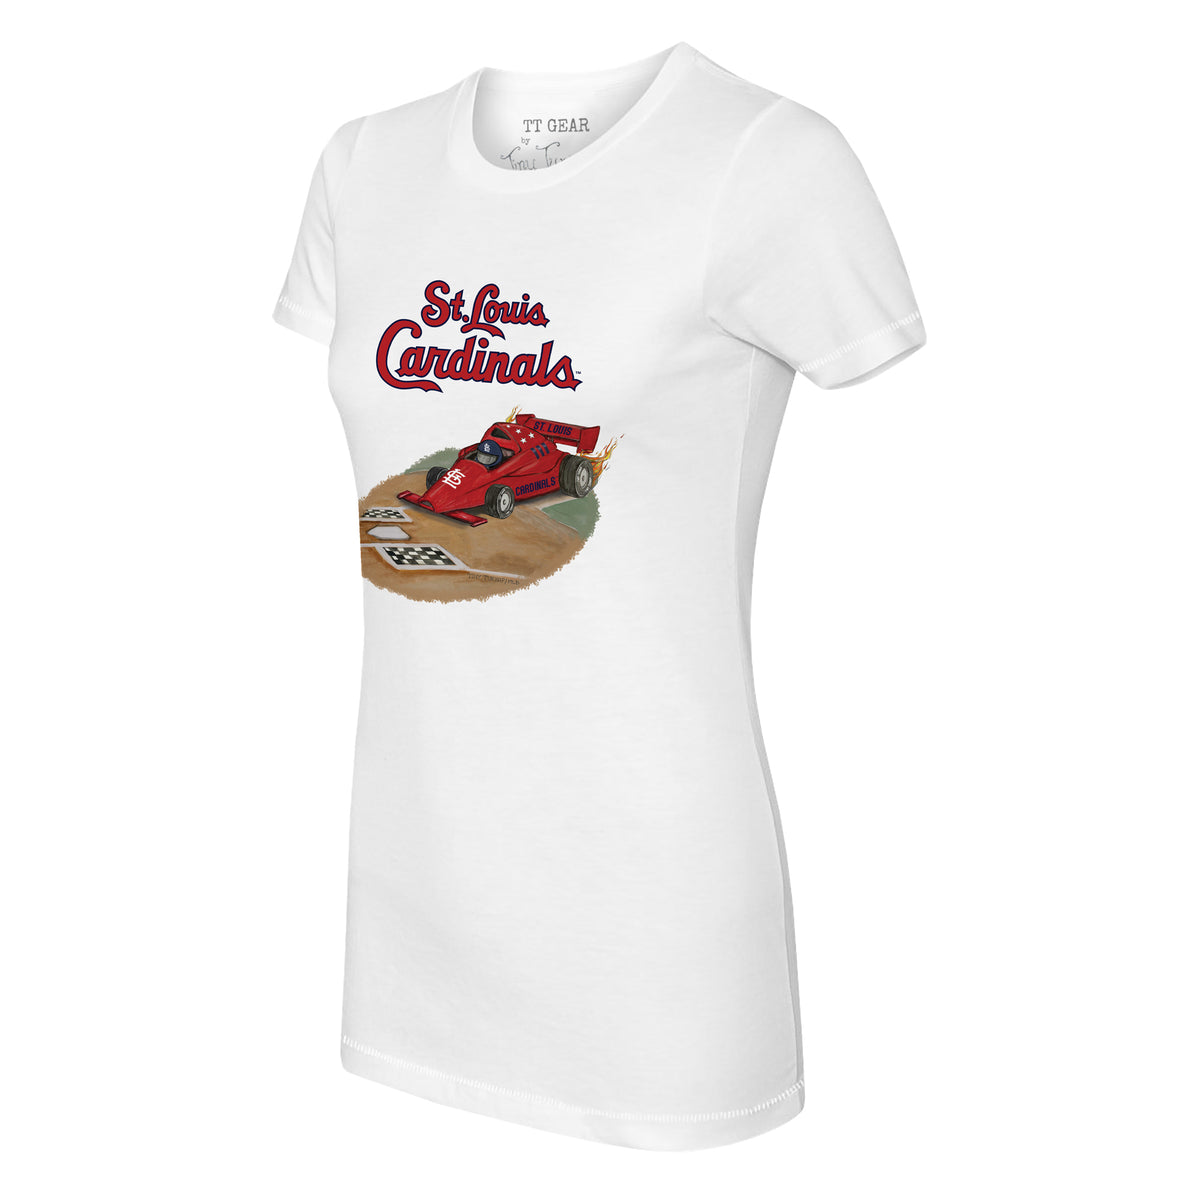 St. Louis Cardinals Race Car Tee Shirt